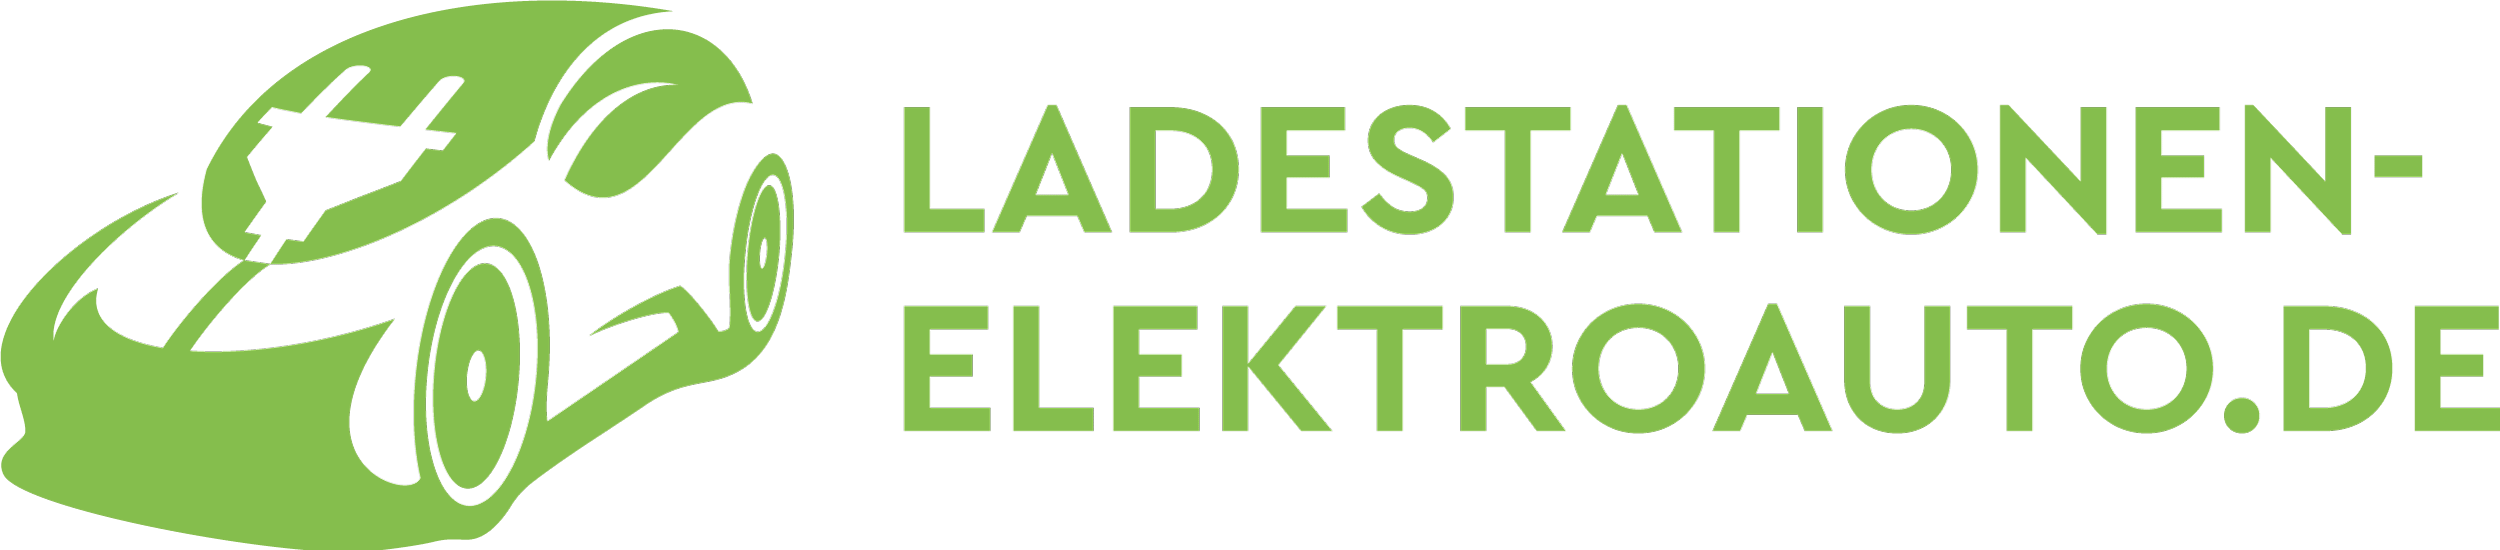 www.ladestationen-elektroauto.de